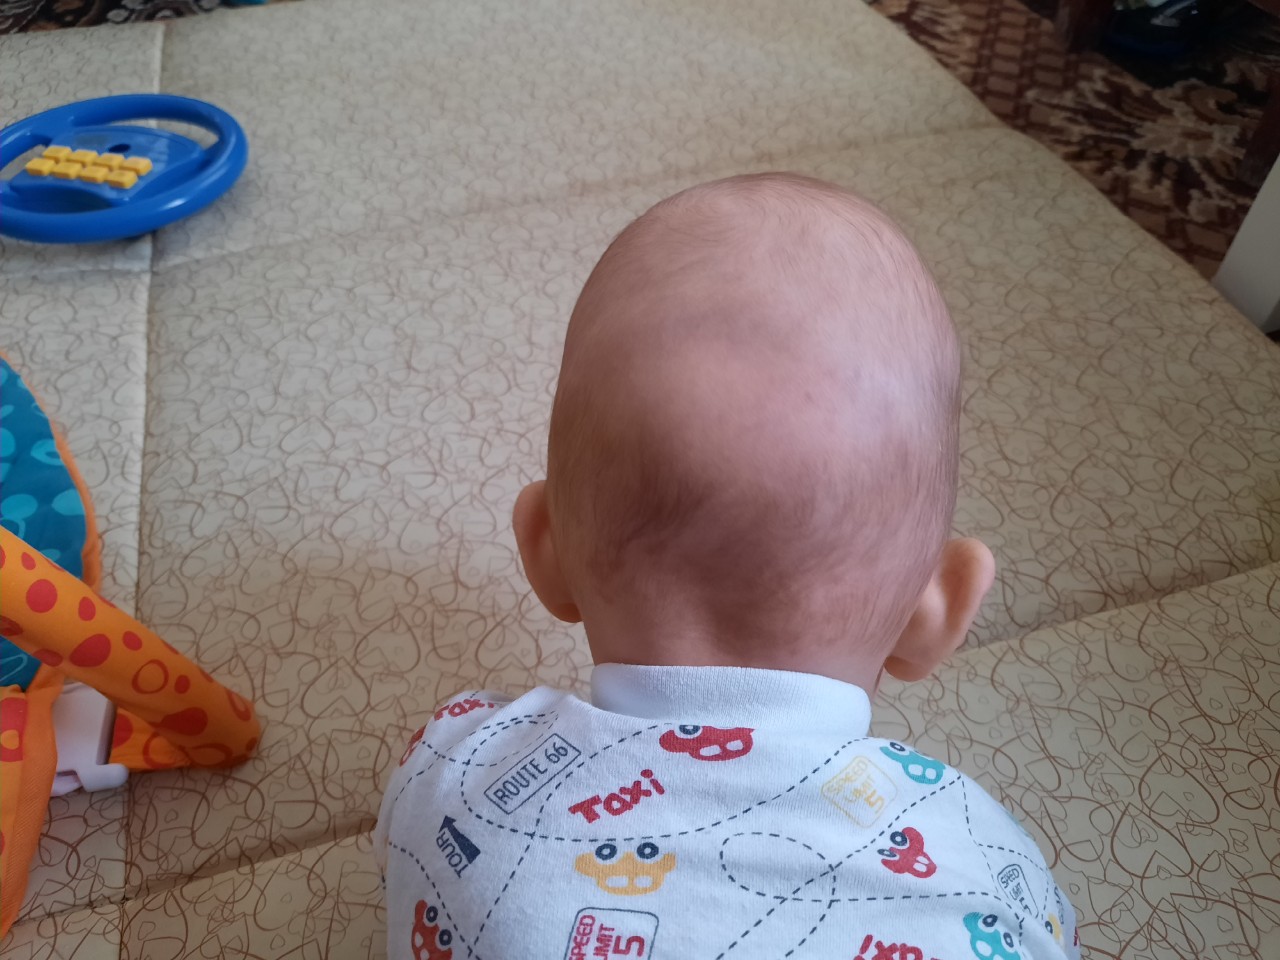 голова ребенка 3 месяца фото